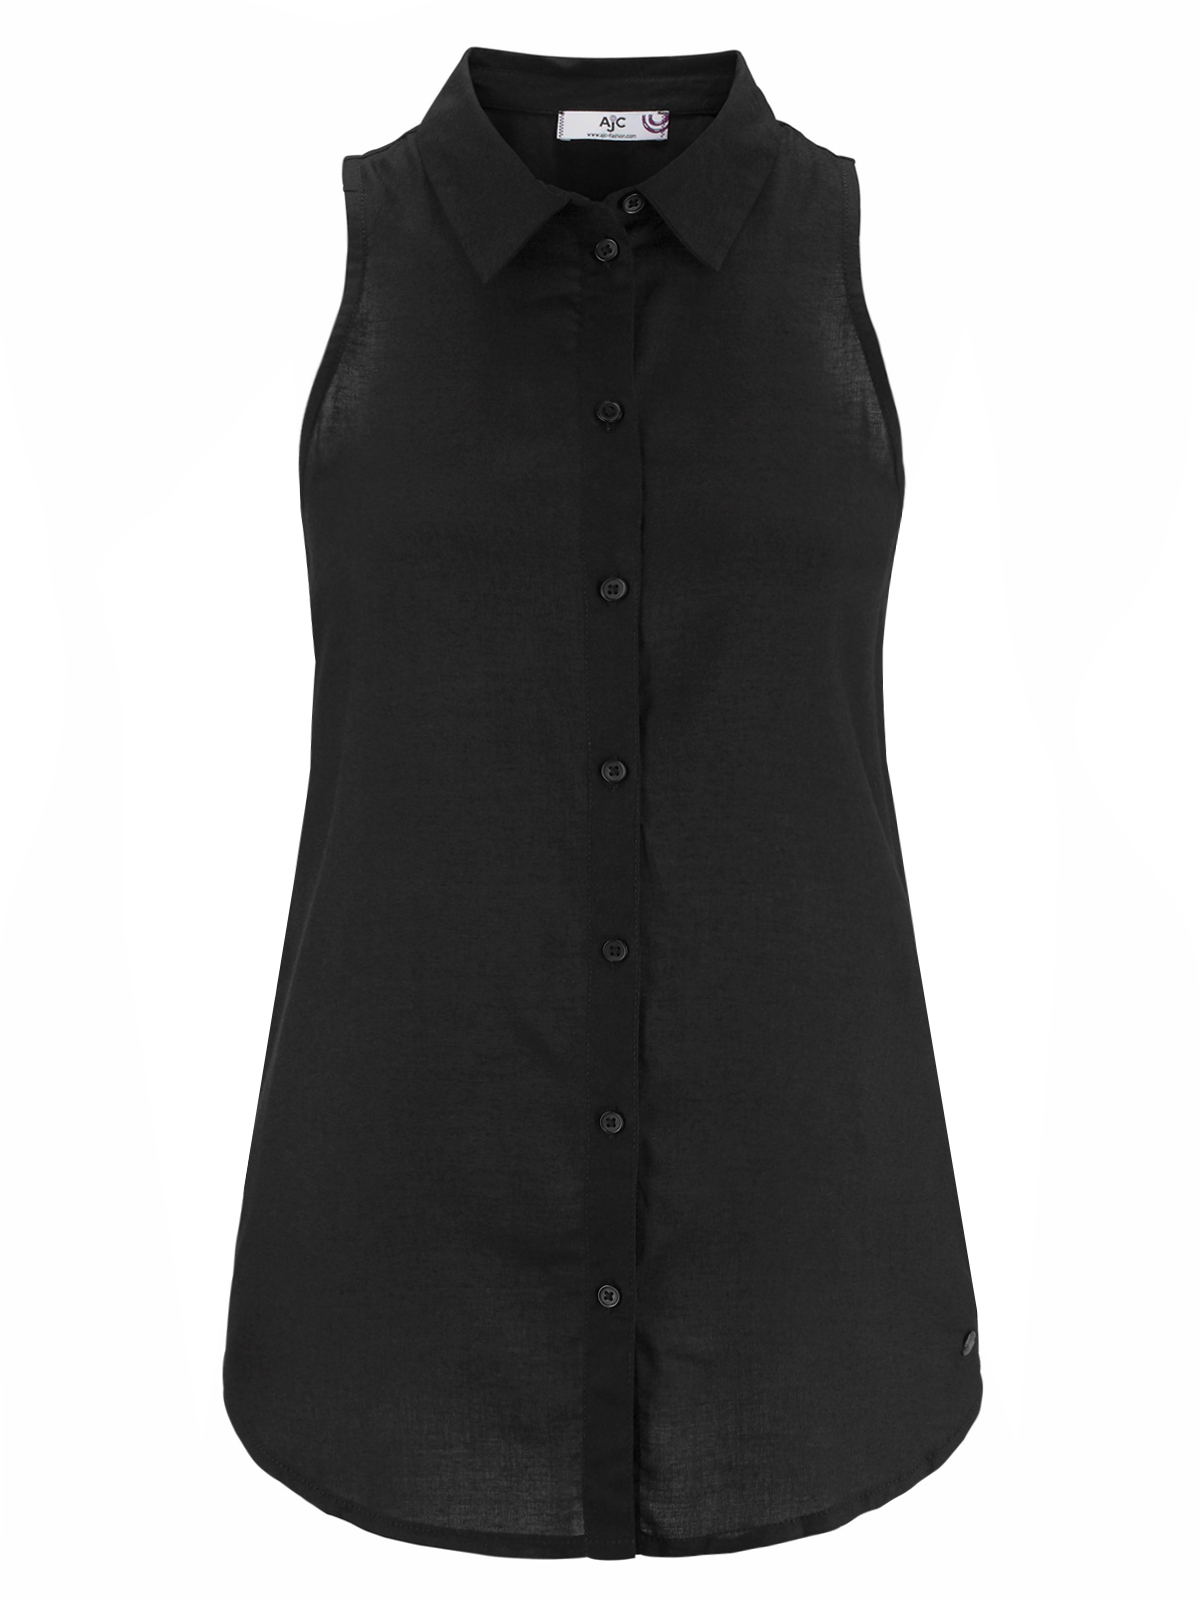 AJC - - AJC BLACK Sleeveless Button Through Shirt - Size 10 to 20 (EU ...